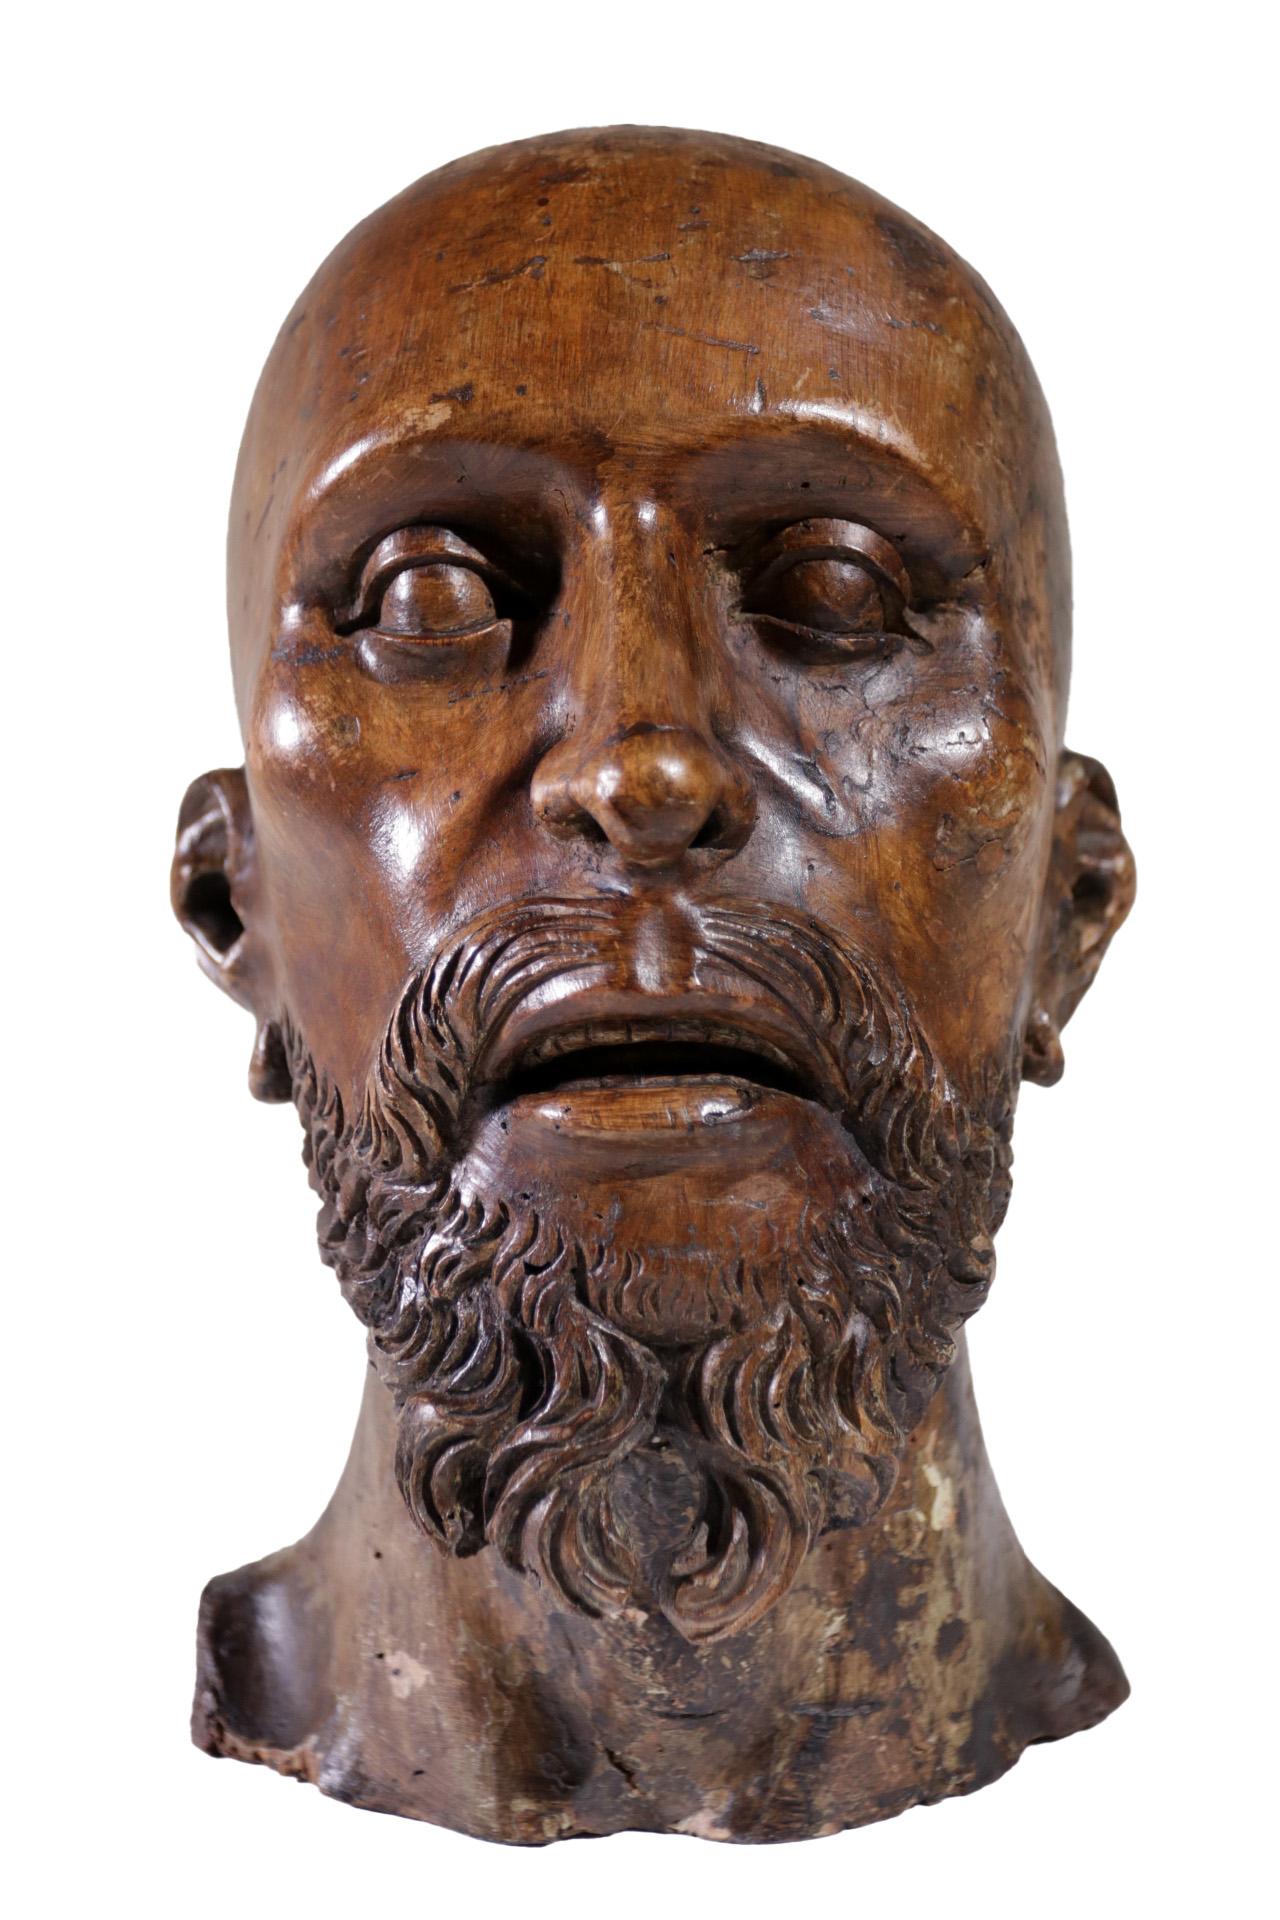 Superbe sculpture en bois sculpté grandeur nature d'une tête d'homme datant d'environ 1700 dans le sud de l'Europe.
 